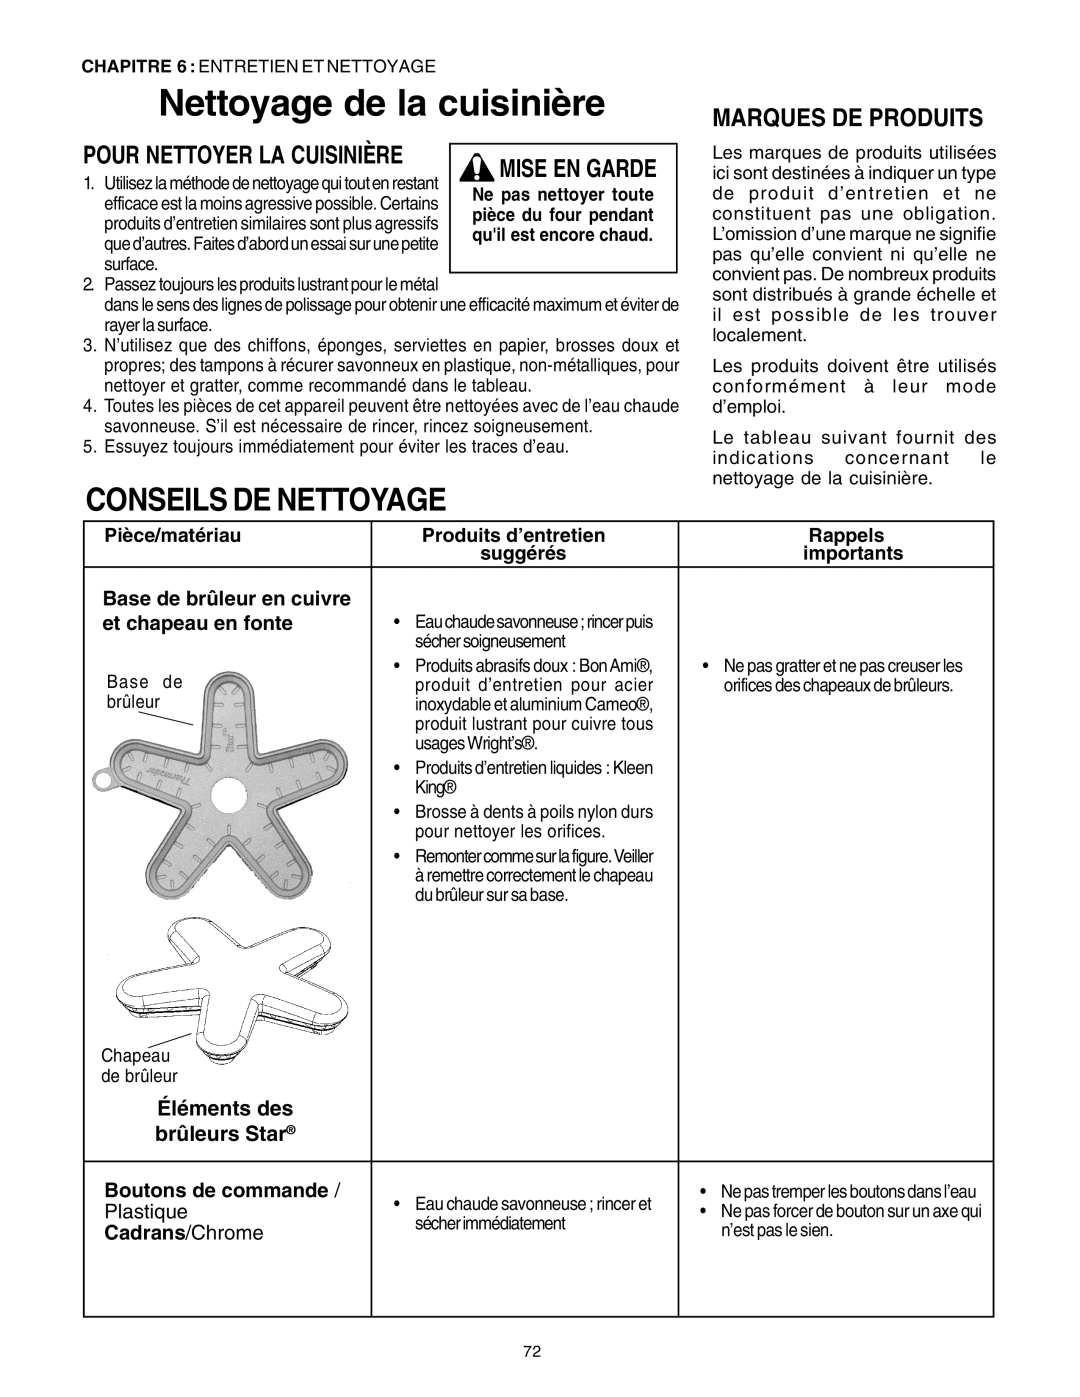 Thermador DP30 manual Nettoyage de la cuisinière, Conseils De Nettoyage, Marques De Produits, Pour Nettoyer La Cuisinière 